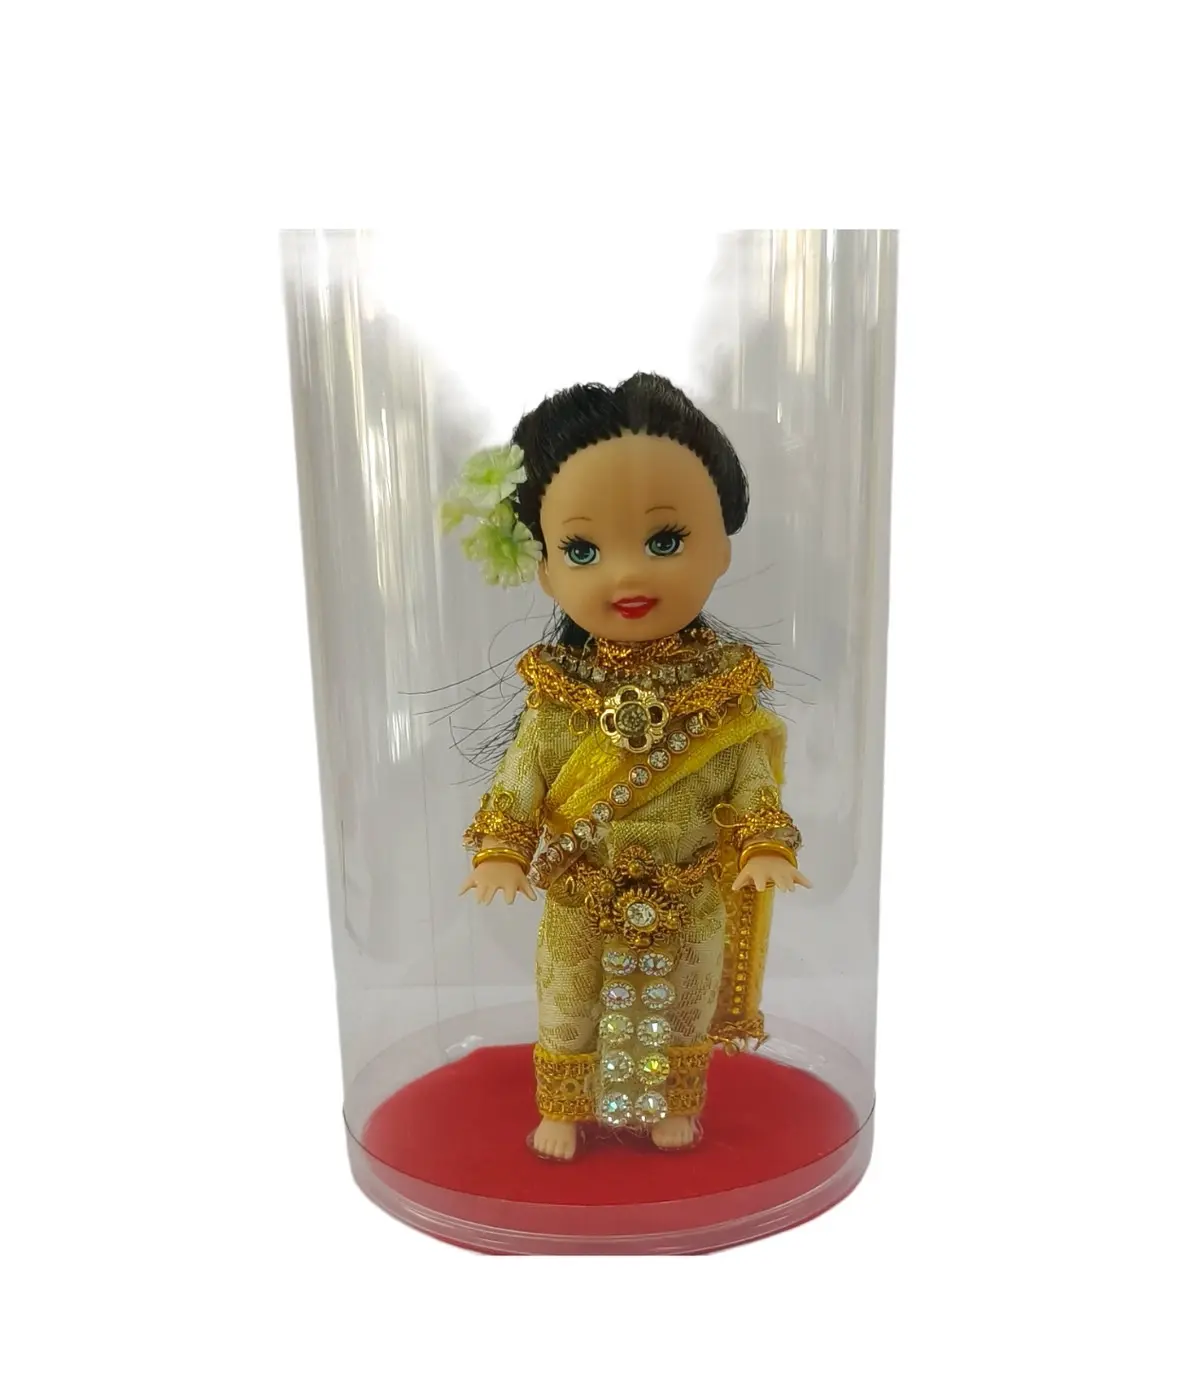 Produto premium da Tailândia Bonequinha em vestido artesanal Boneco em fantasia Siwalai Tailandesa Artesanato de artesãos tailandeses